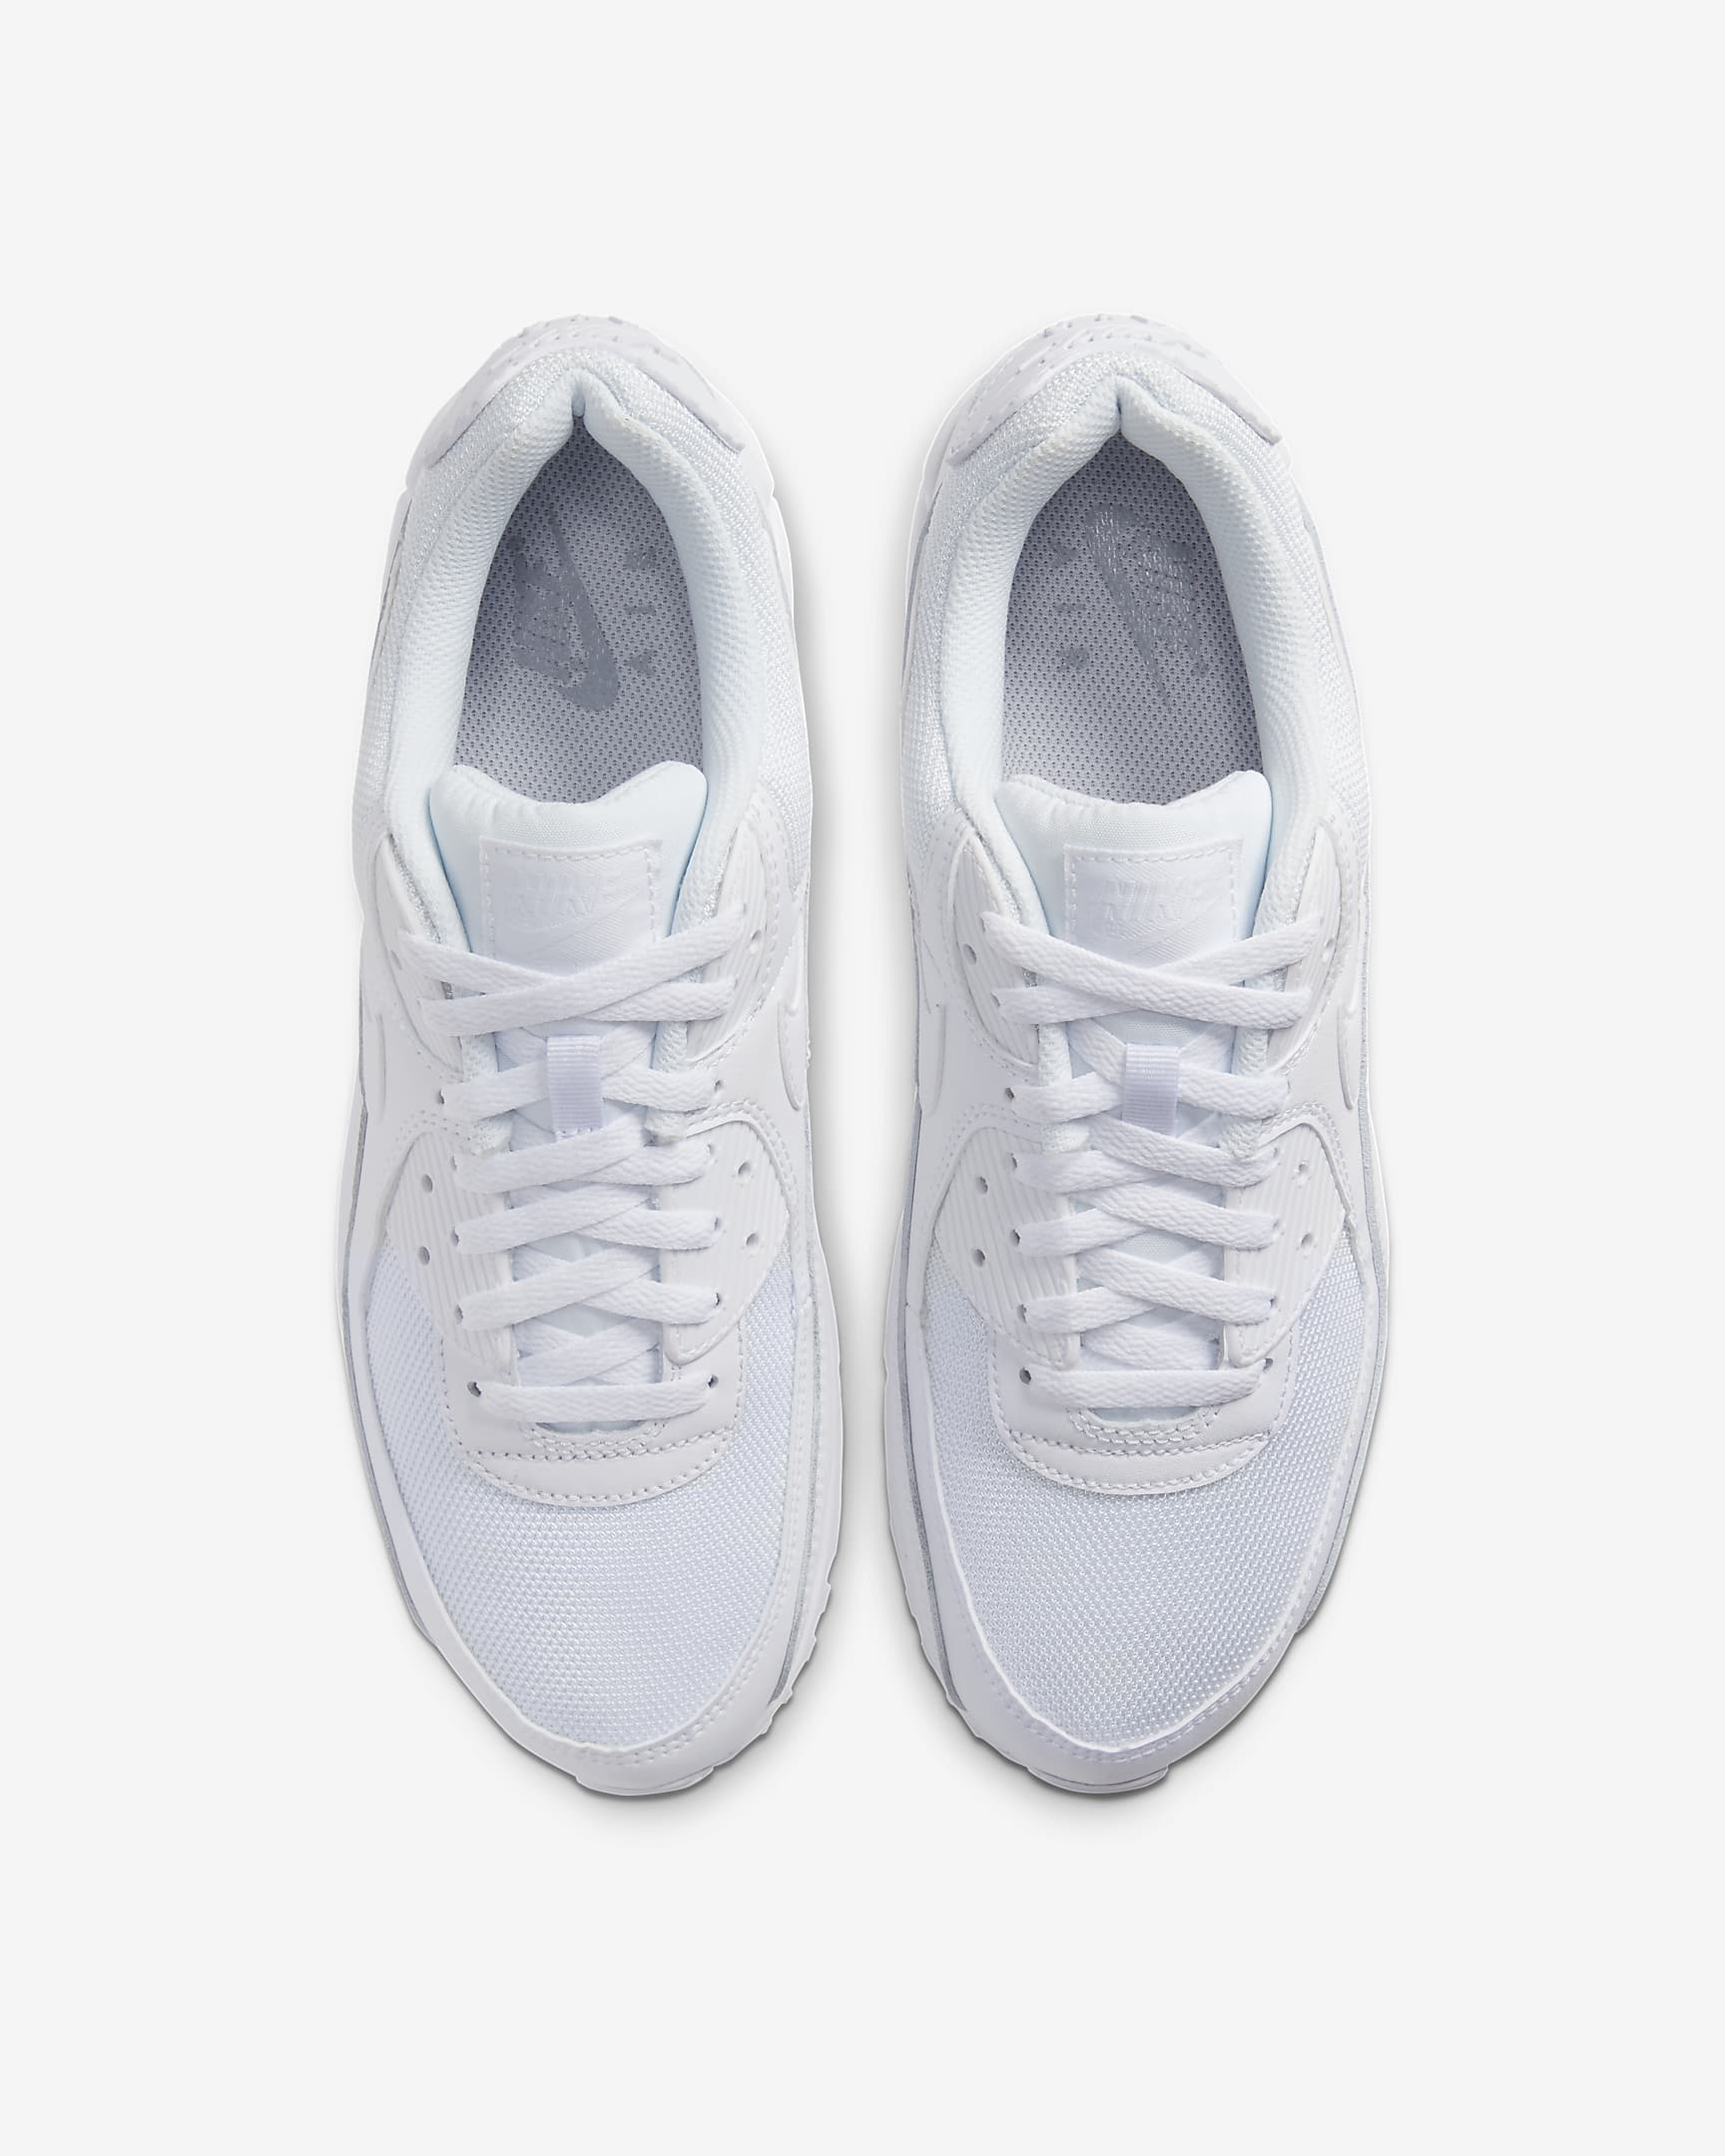 Pánská bota Nike Air Max 90 - Bílá/Bílá/Wolf Grey/Bílá